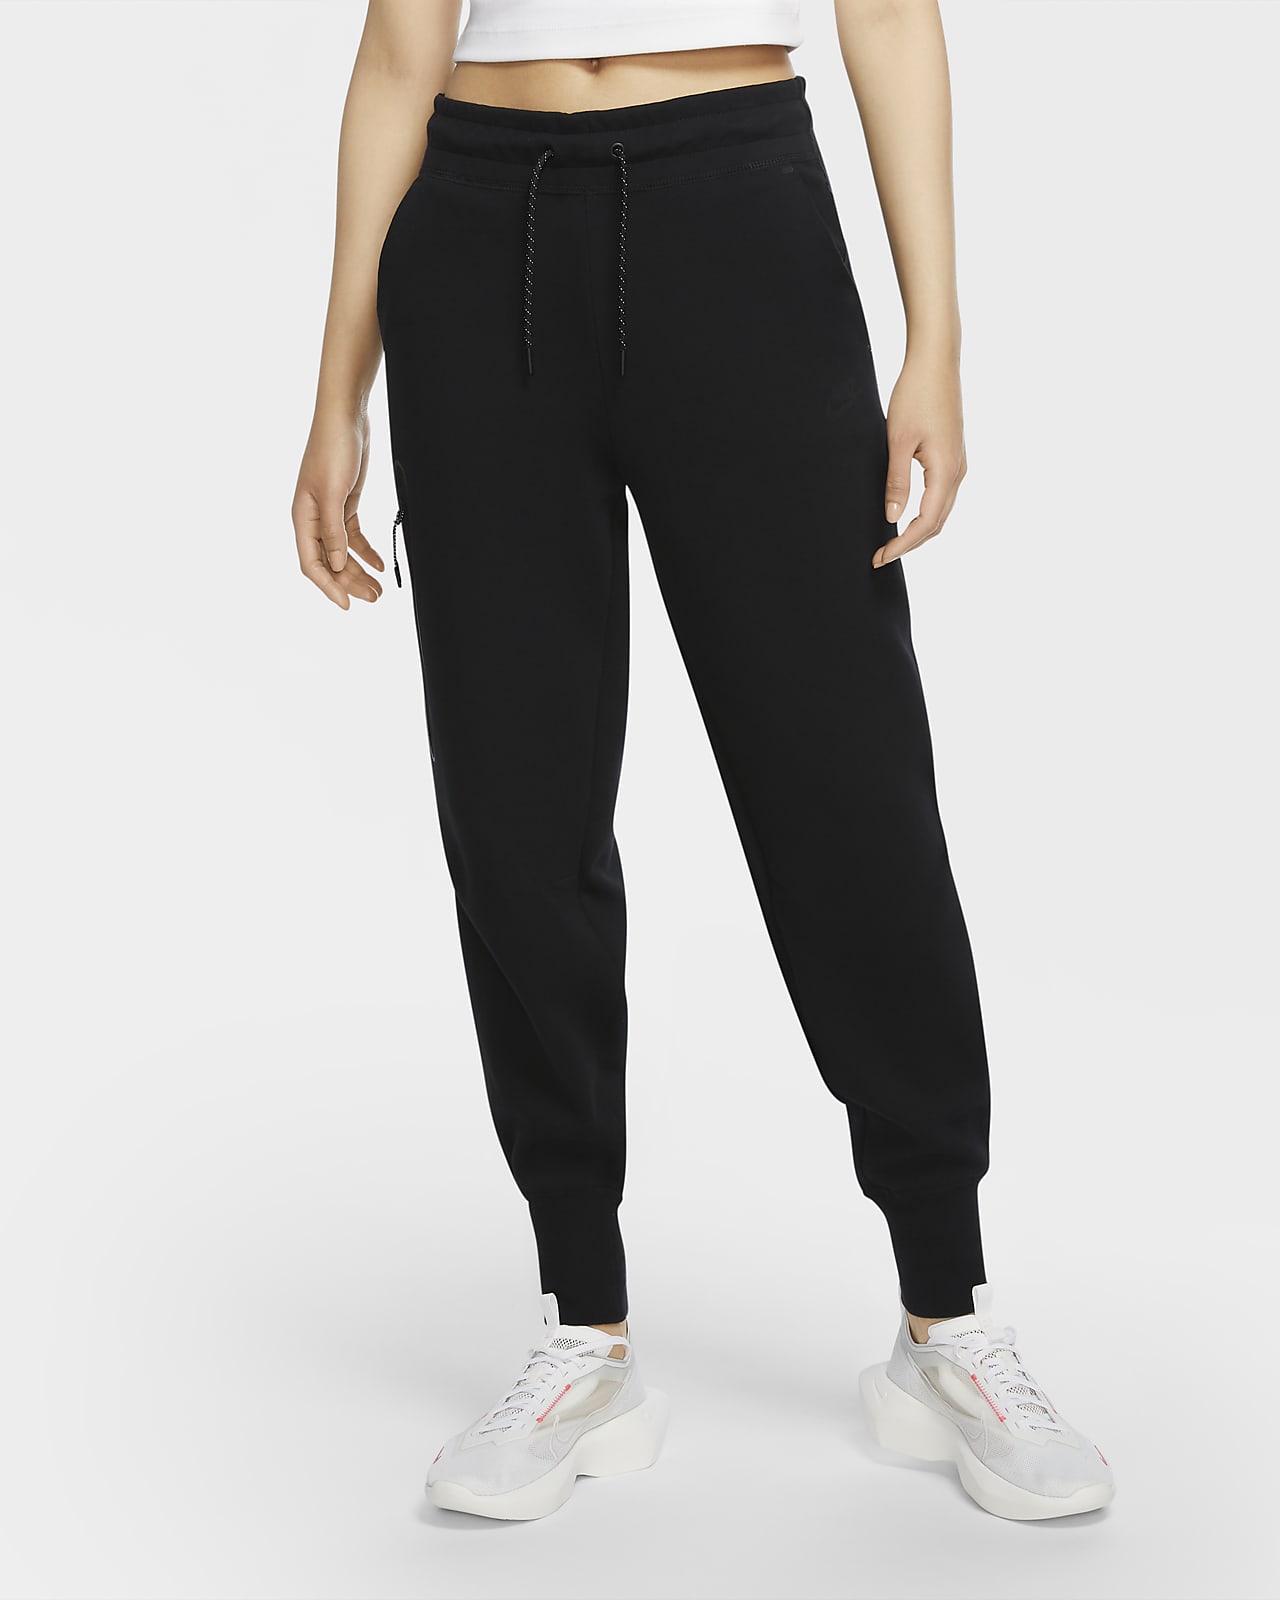 Γυναικείο παντελόνι Nike Sportswear Tech Fleece